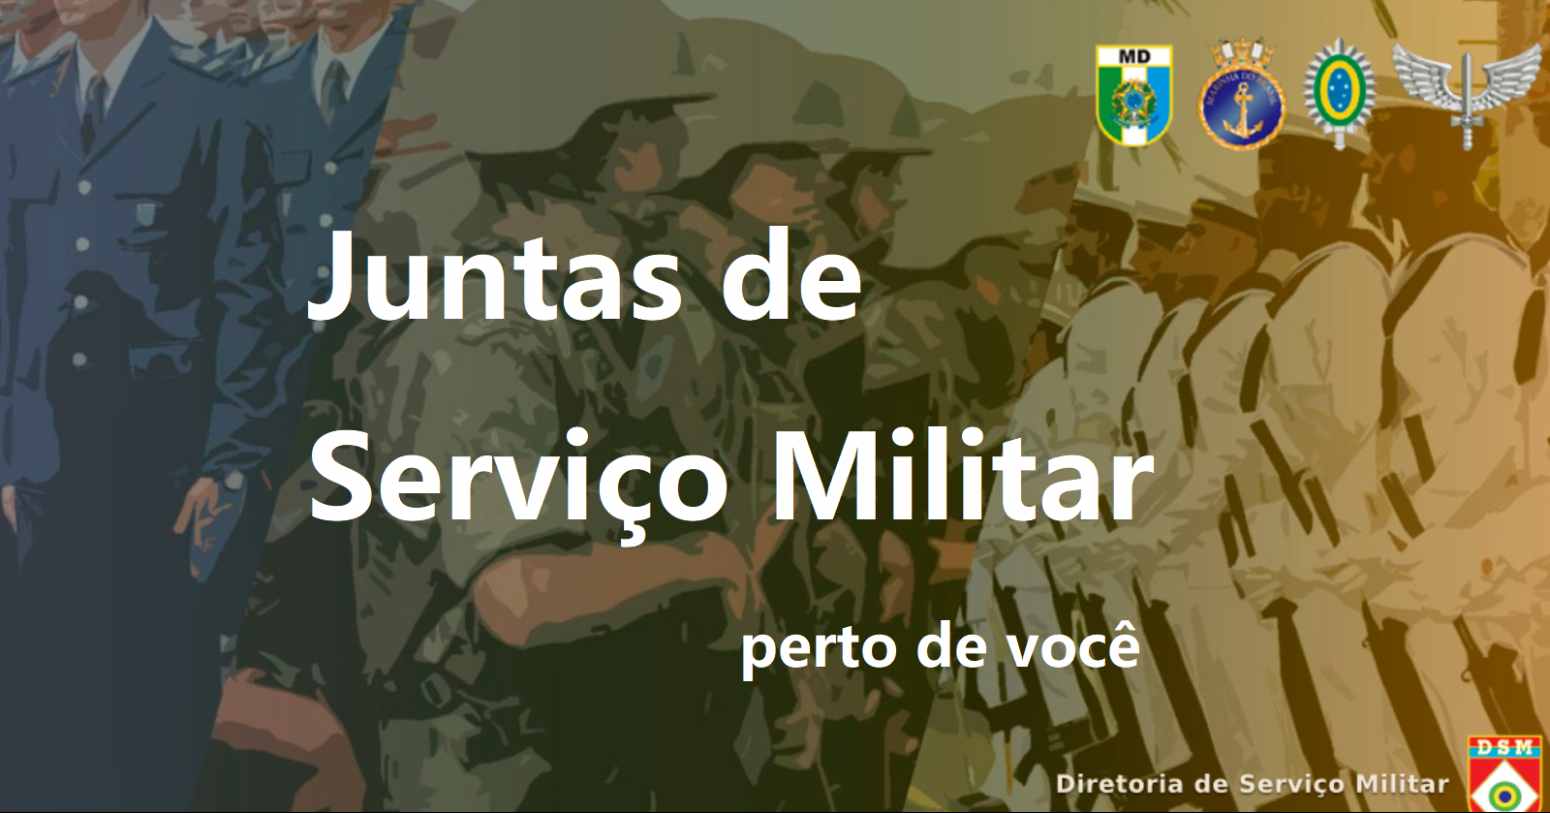 JSM CE – lista completa das Juntas de Serviço Militar em Ceará